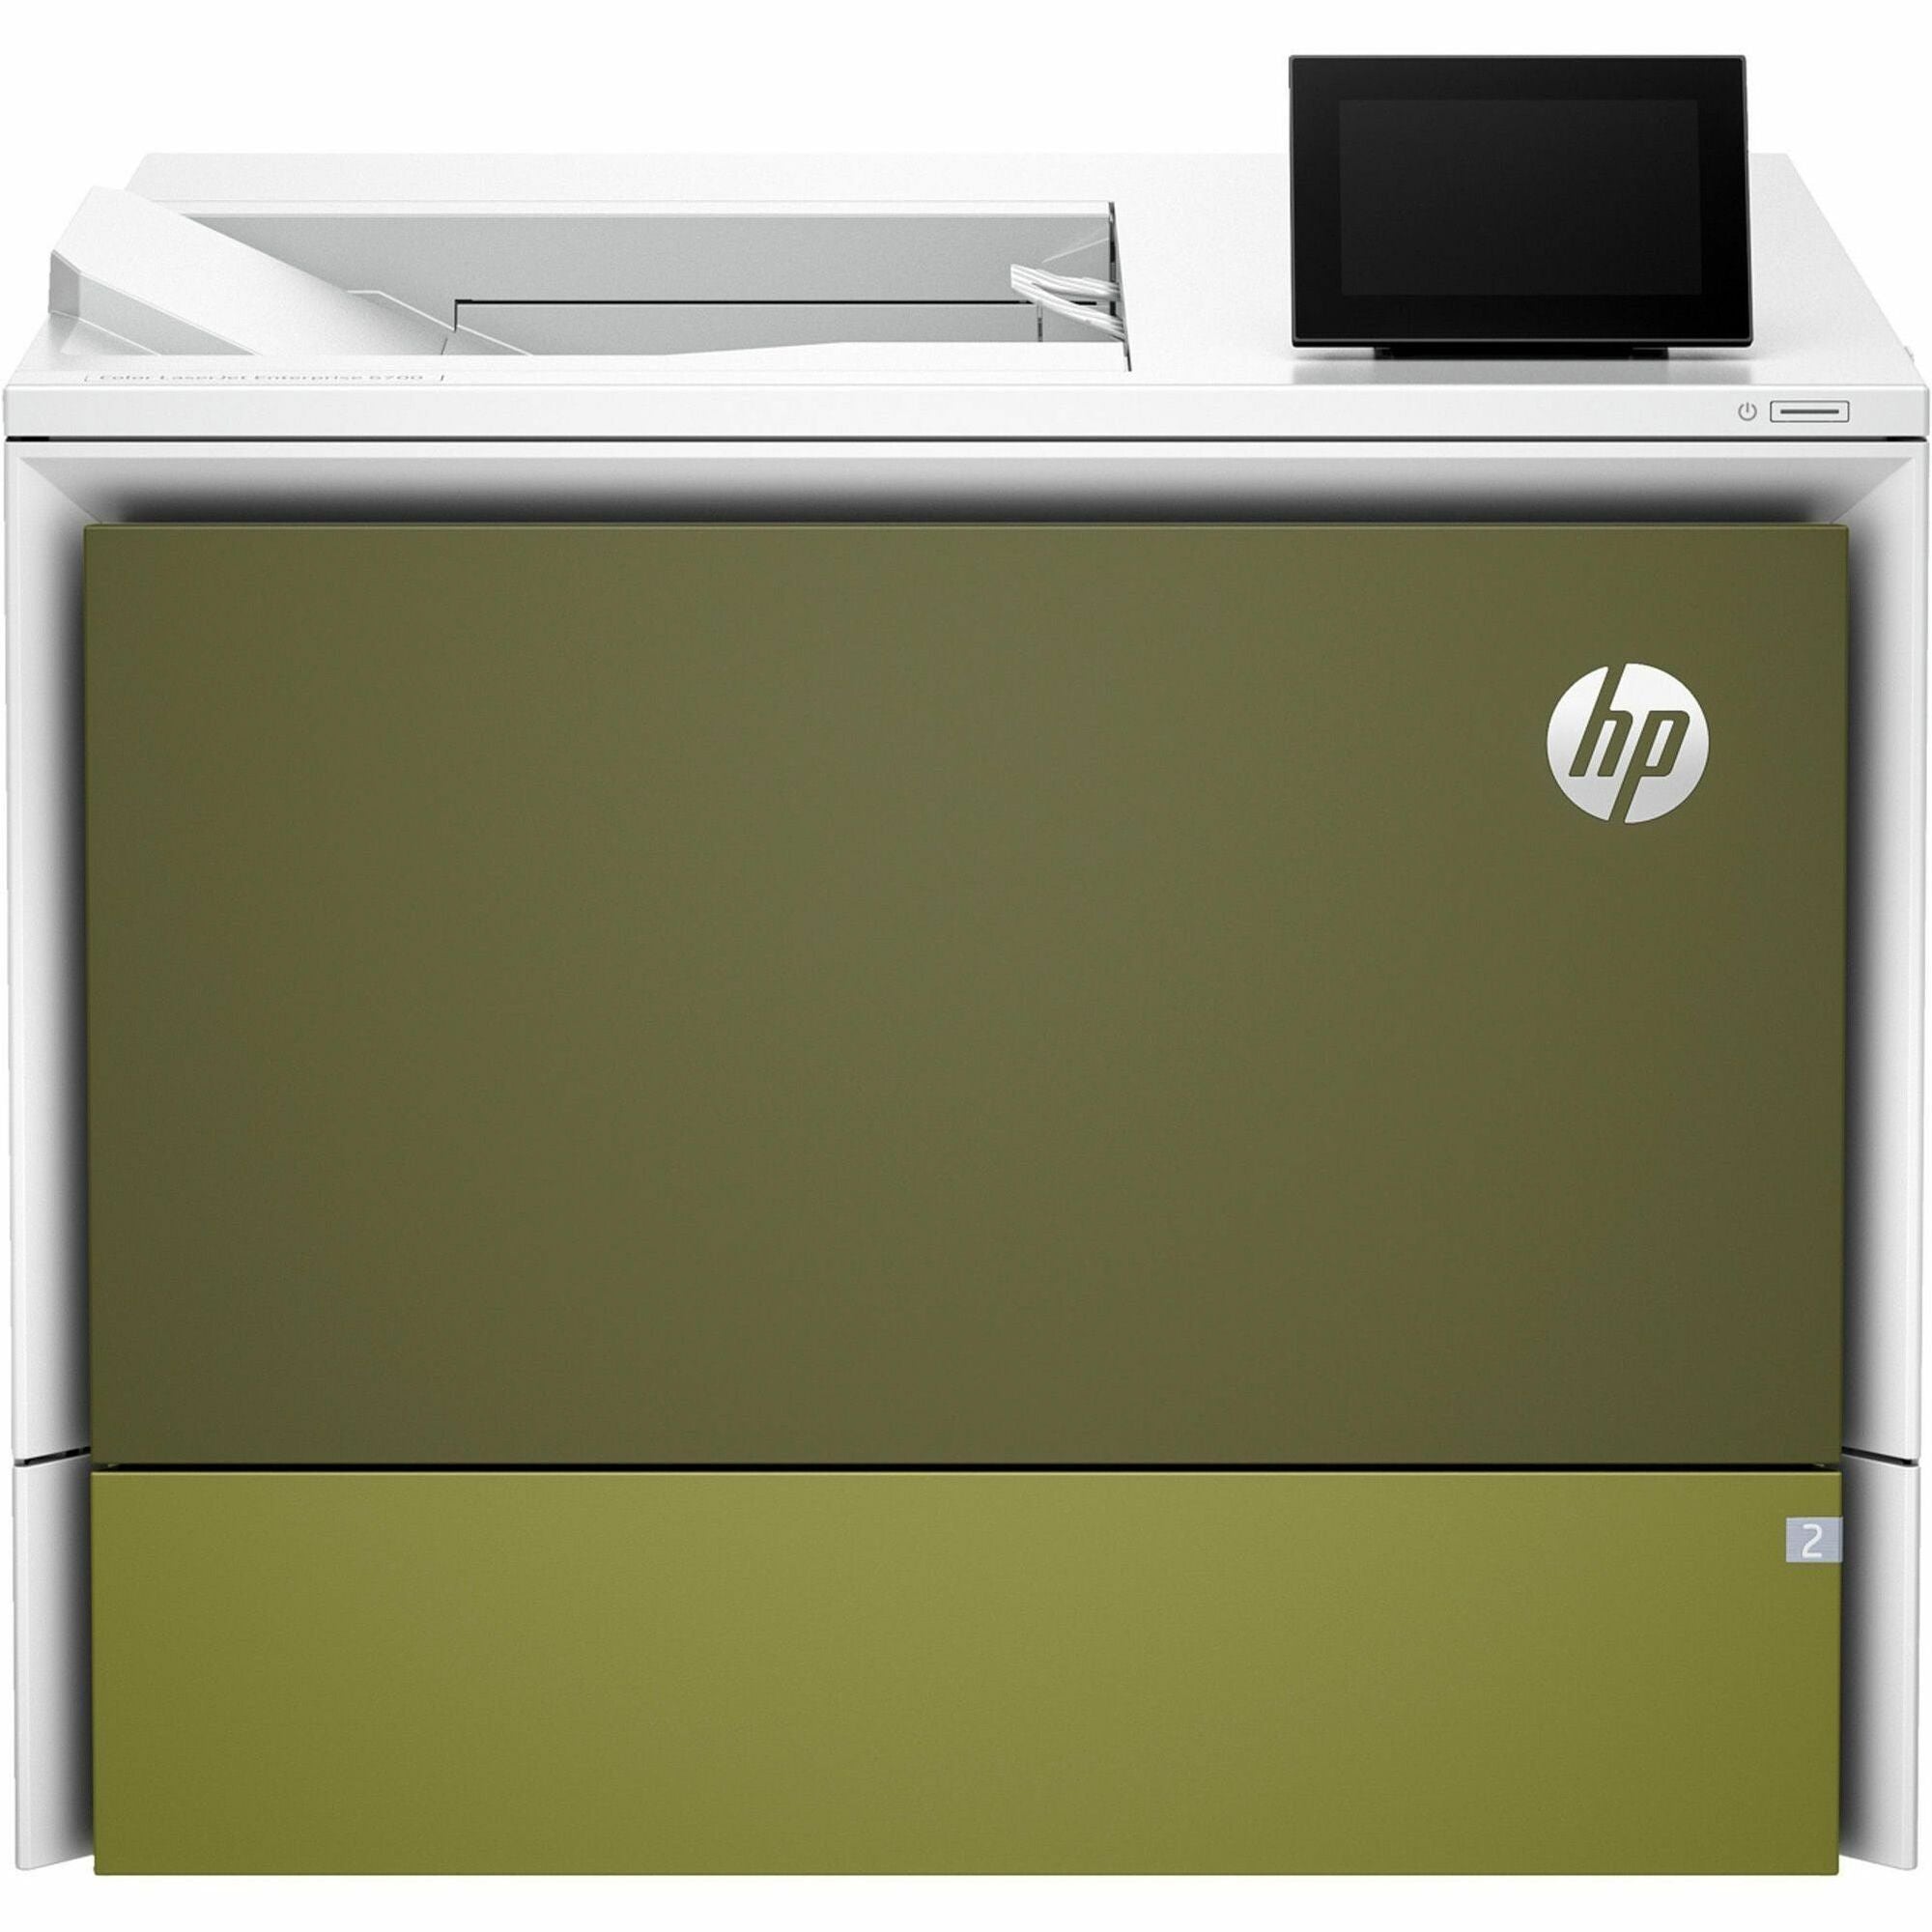 HP LaserJet Enterprise 6700dn Laser Printer - Color - 55 ppm Color - 1200 x 1200 dpi Print - Automatic Duplex Print - 550 Sheets Input - Ethernet - Plain Paper Print - Gigabit Ethernet - USB